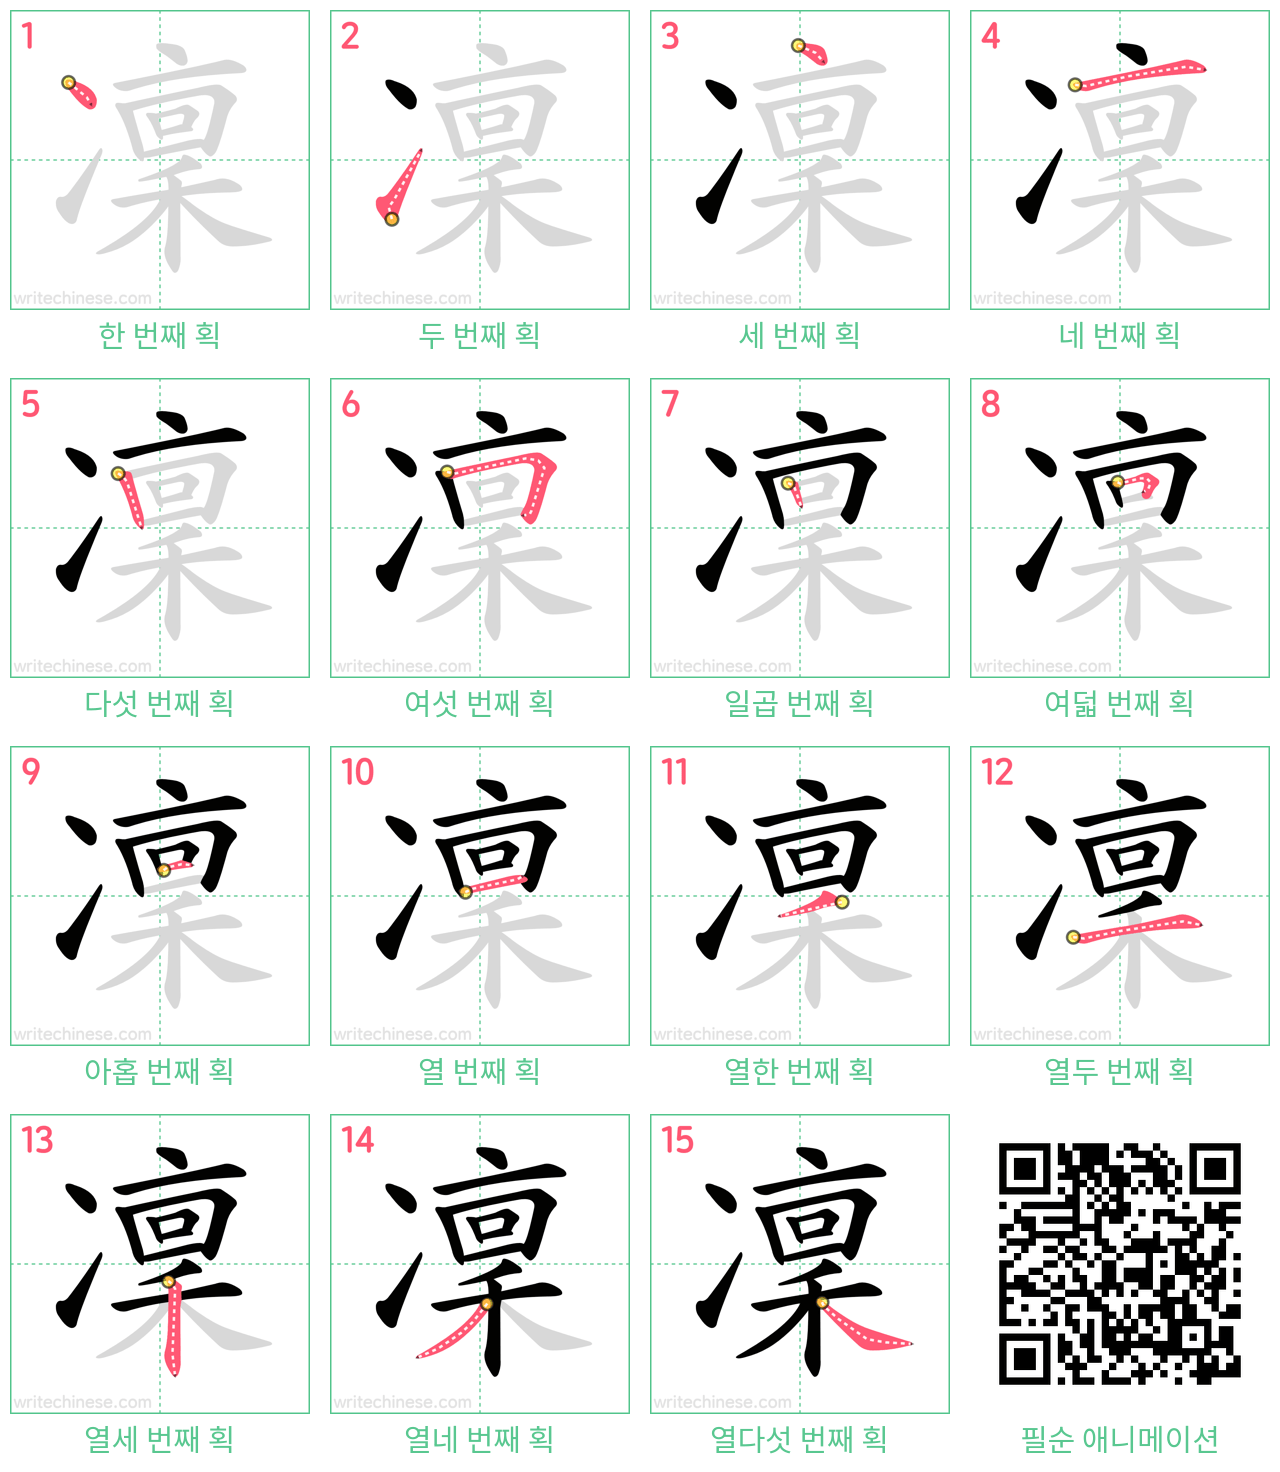 凜 step-by-step stroke order diagrams